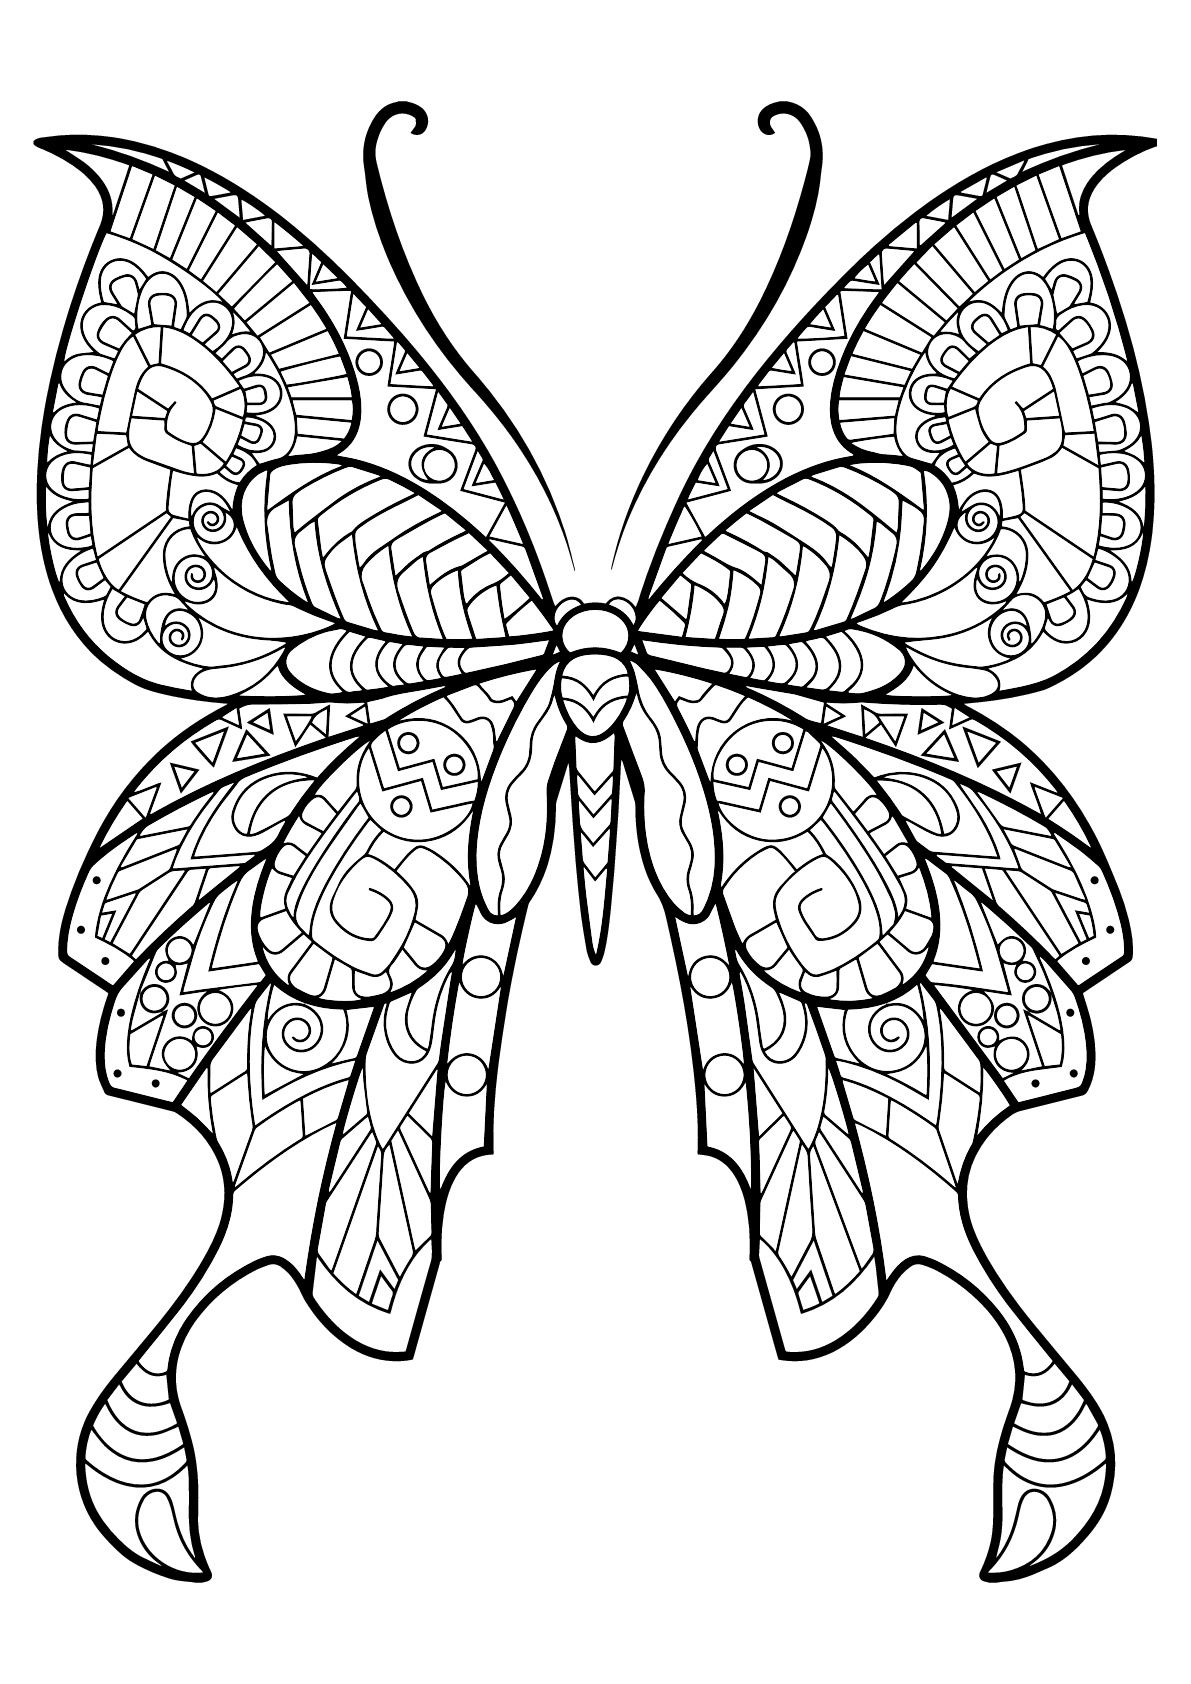 Mariposa con bellos e intrincados dibujos - 8